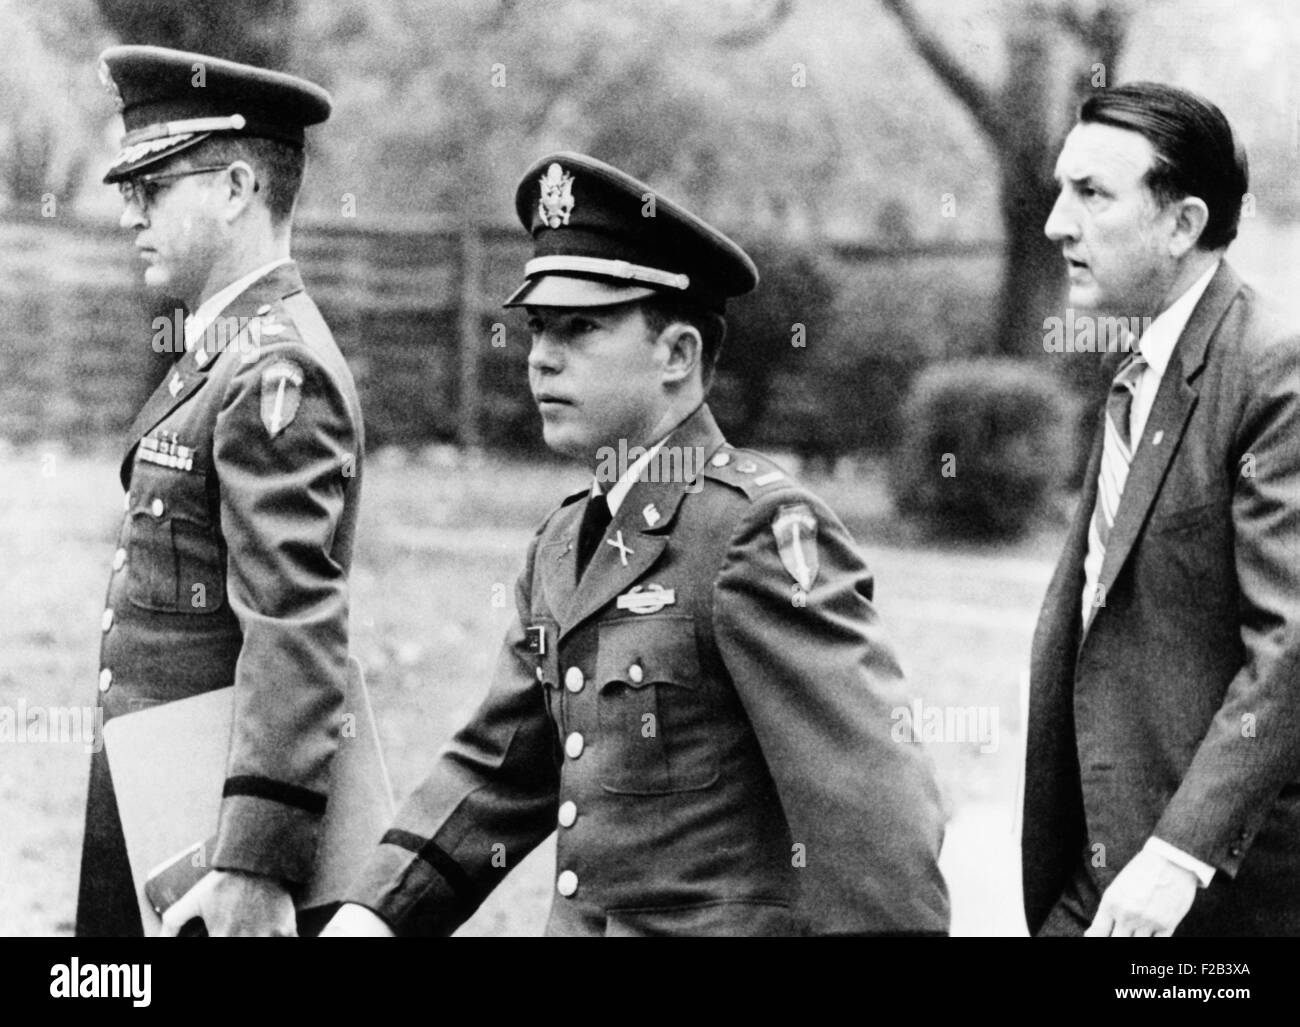 Le Lieutenant de l'armée William Calley arrivant à sa cour martiale pour diriger les massacres de My Lai. Avec lui sont de grands Kenneth Raby (à gauche) et Richard Kay de son état-major de la défense. Le 19 novembre 1970. - (CSU 2015 5 164) Banque D'Images